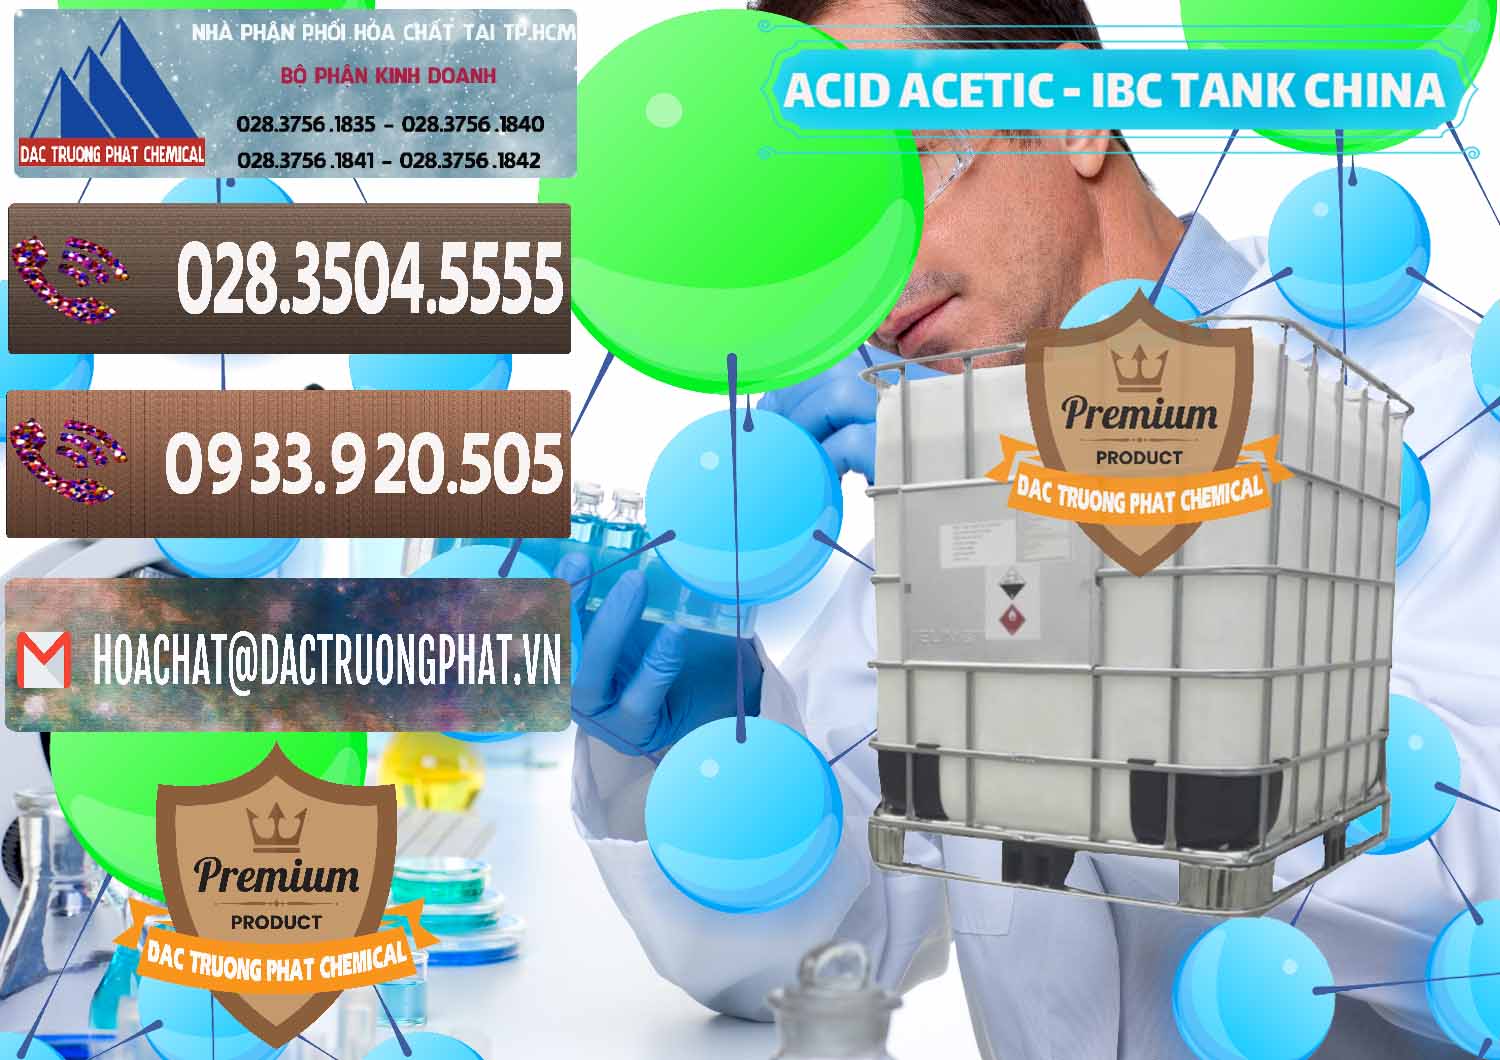 Đơn vị chuyên bán & cung cấp Acetic Acid – Axit Acetic Tank Bồn IBC Trung Quốc China - 0443 - Nơi chuyên cung cấp _ bán hóa chất tại TP.HCM - hoachatviet.net